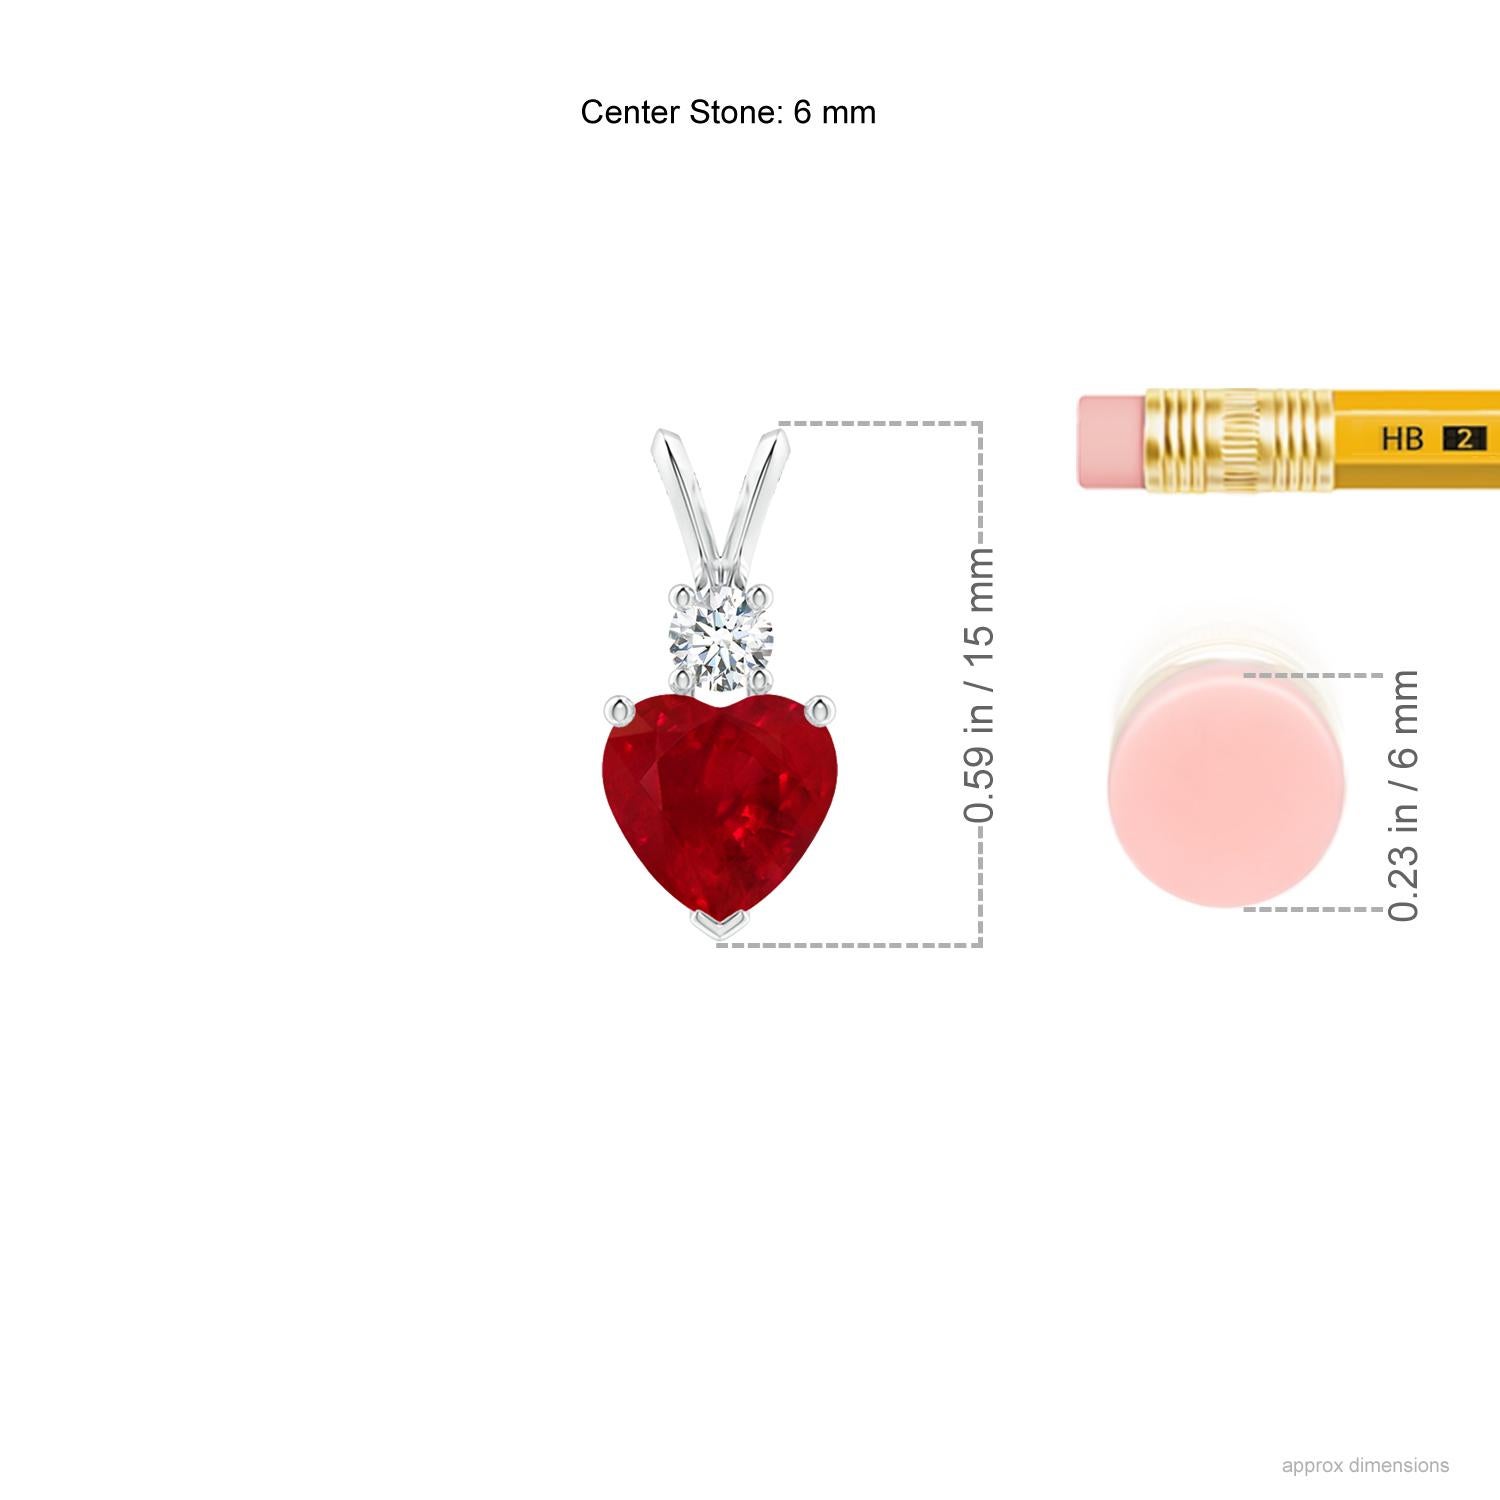 Dieser herzförmige Rubin-Anhänger aus Platin ist ein schönes Symbol der Liebe. Der kühne rote Edelstein wird von einem glitzernden runden Diamanten gekrönt und ist mit einem Kaninchenohrbündel verbunden.
Der Rubin ist der Geburtsstein des Monats